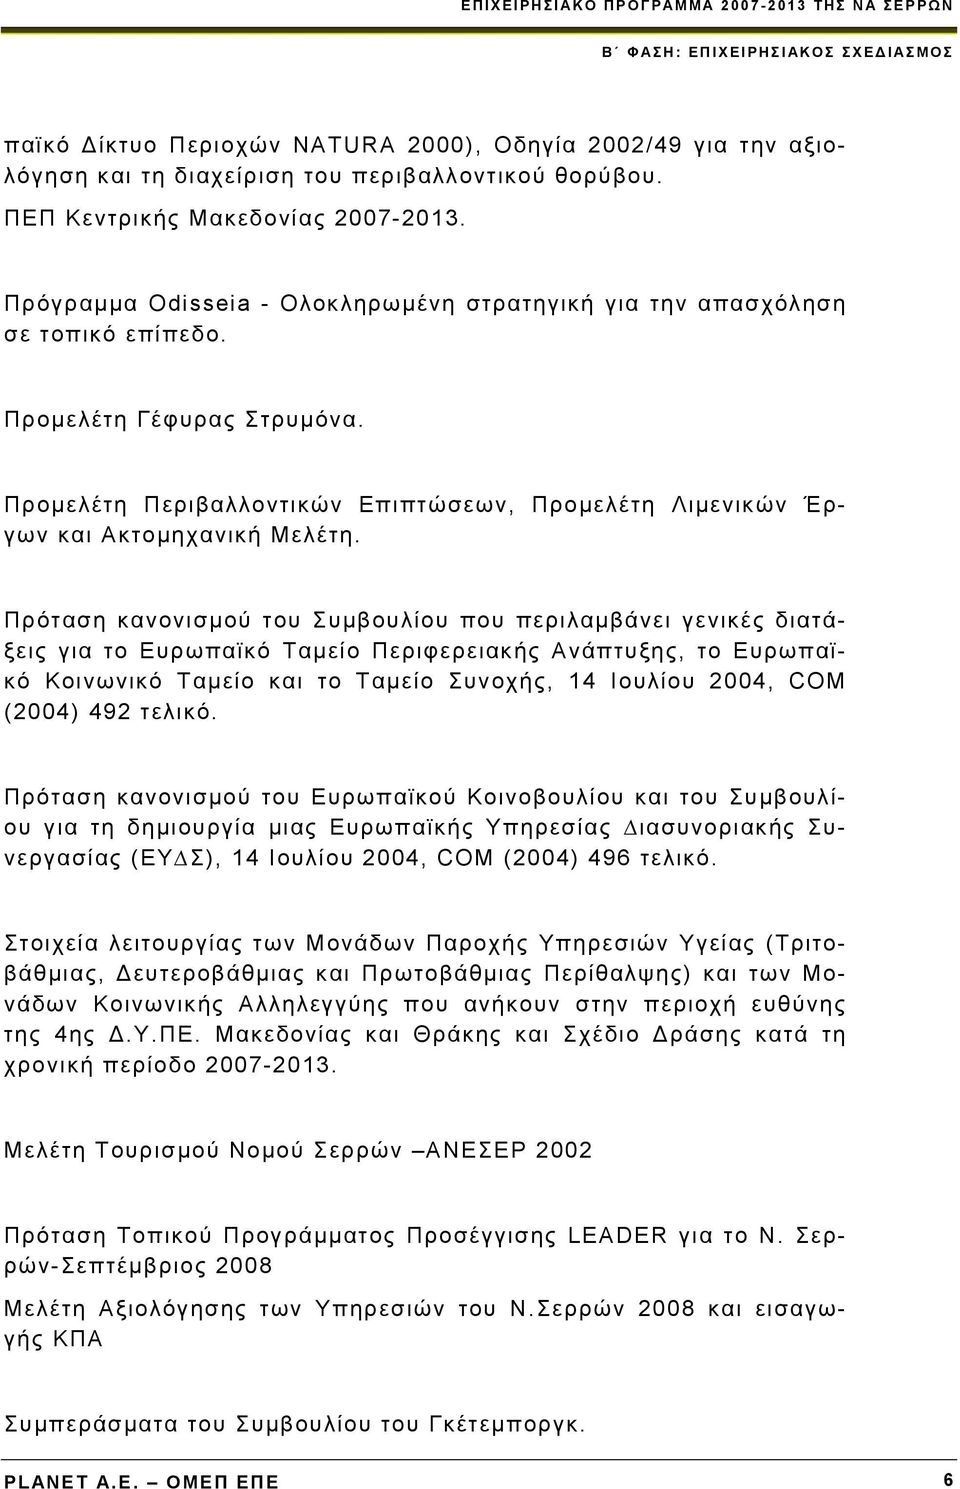 Πρόταση κανονισμού του Συμβουλίου που περιλαμβάνει γενικές διατάξεις για το Ευρωπαϊκό Ταμείο Περιφερειακής Ανάπτυξης, το Ευρωπαϊκό Κοινωνικό Ταμείο και το Ταμείο Συνοχής, 14 Ιουλίου 2004, COM (2004)